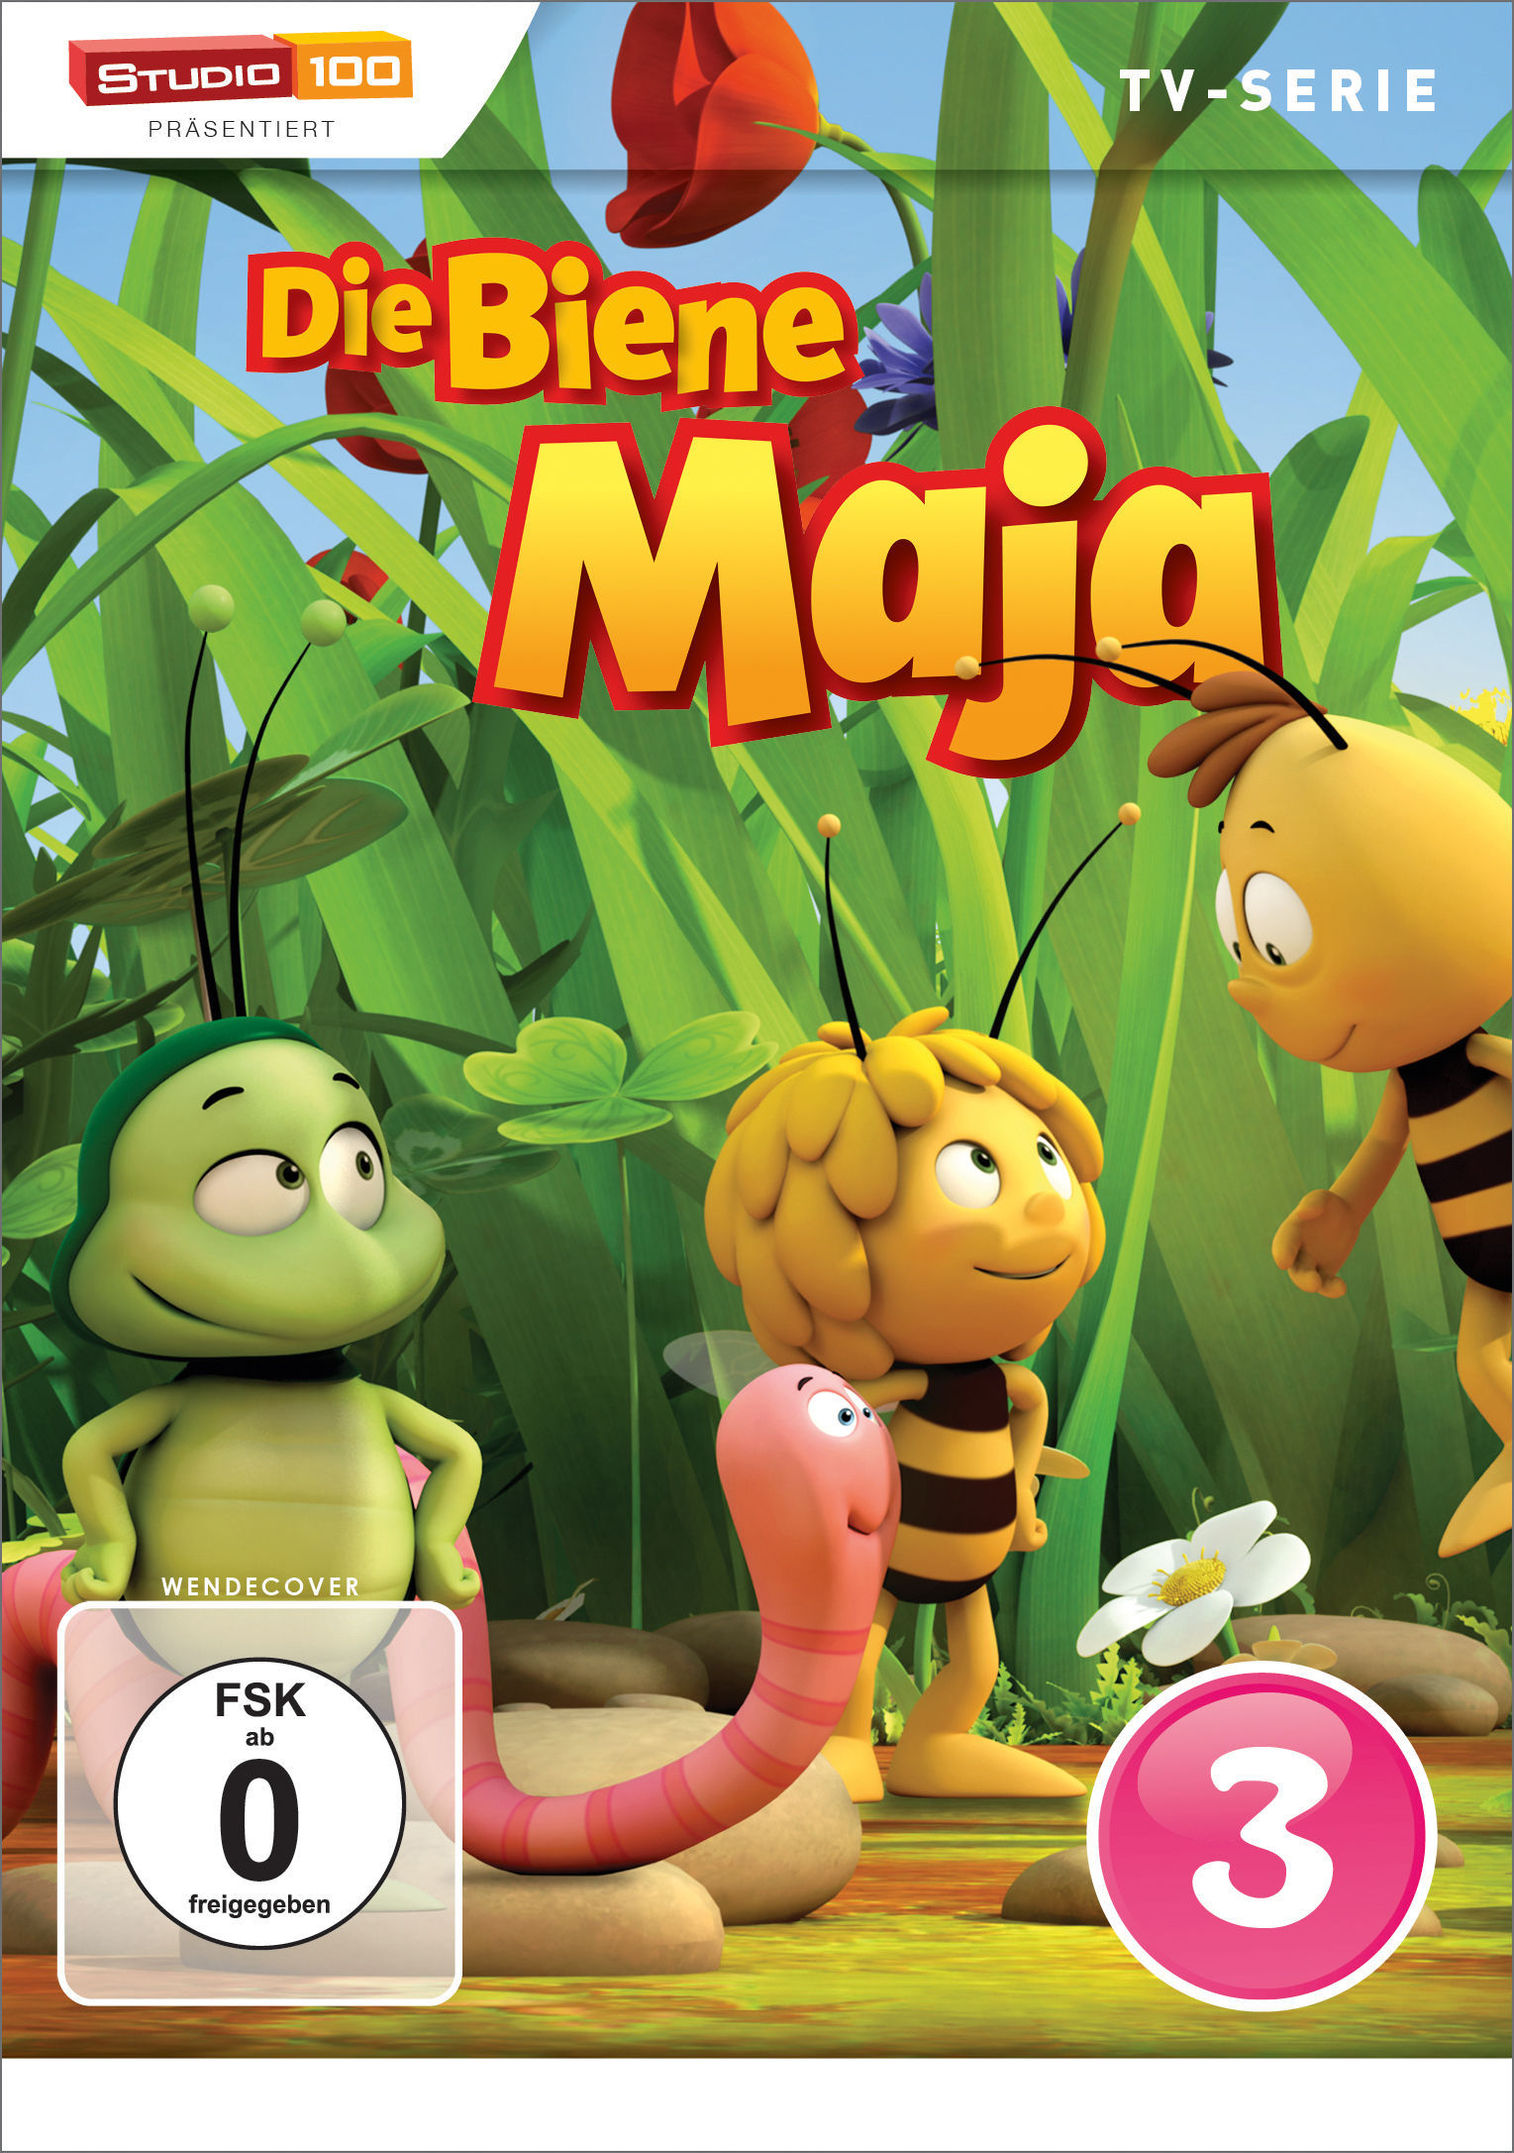 Die Biene Maja - DVD 3 kaufen | tausendkind.at